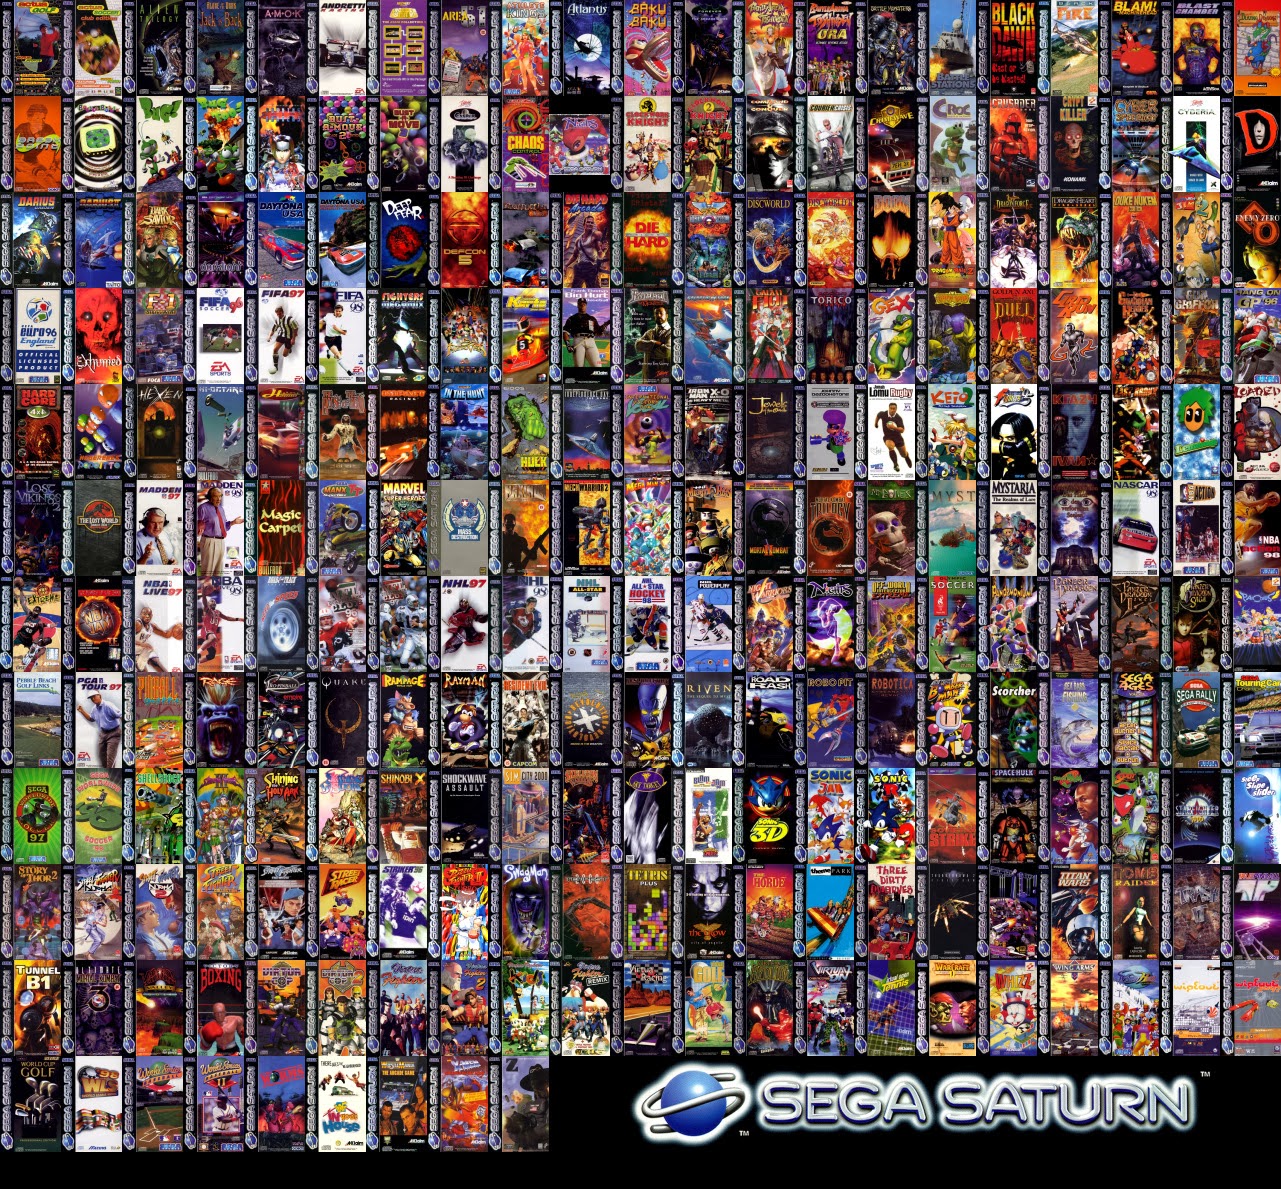 Название игр на приставке. Sega Mega Drive 2 игры. Игры на сегу мега драйв 2. Компьютерные игры названия. Популярные персонажи игр.